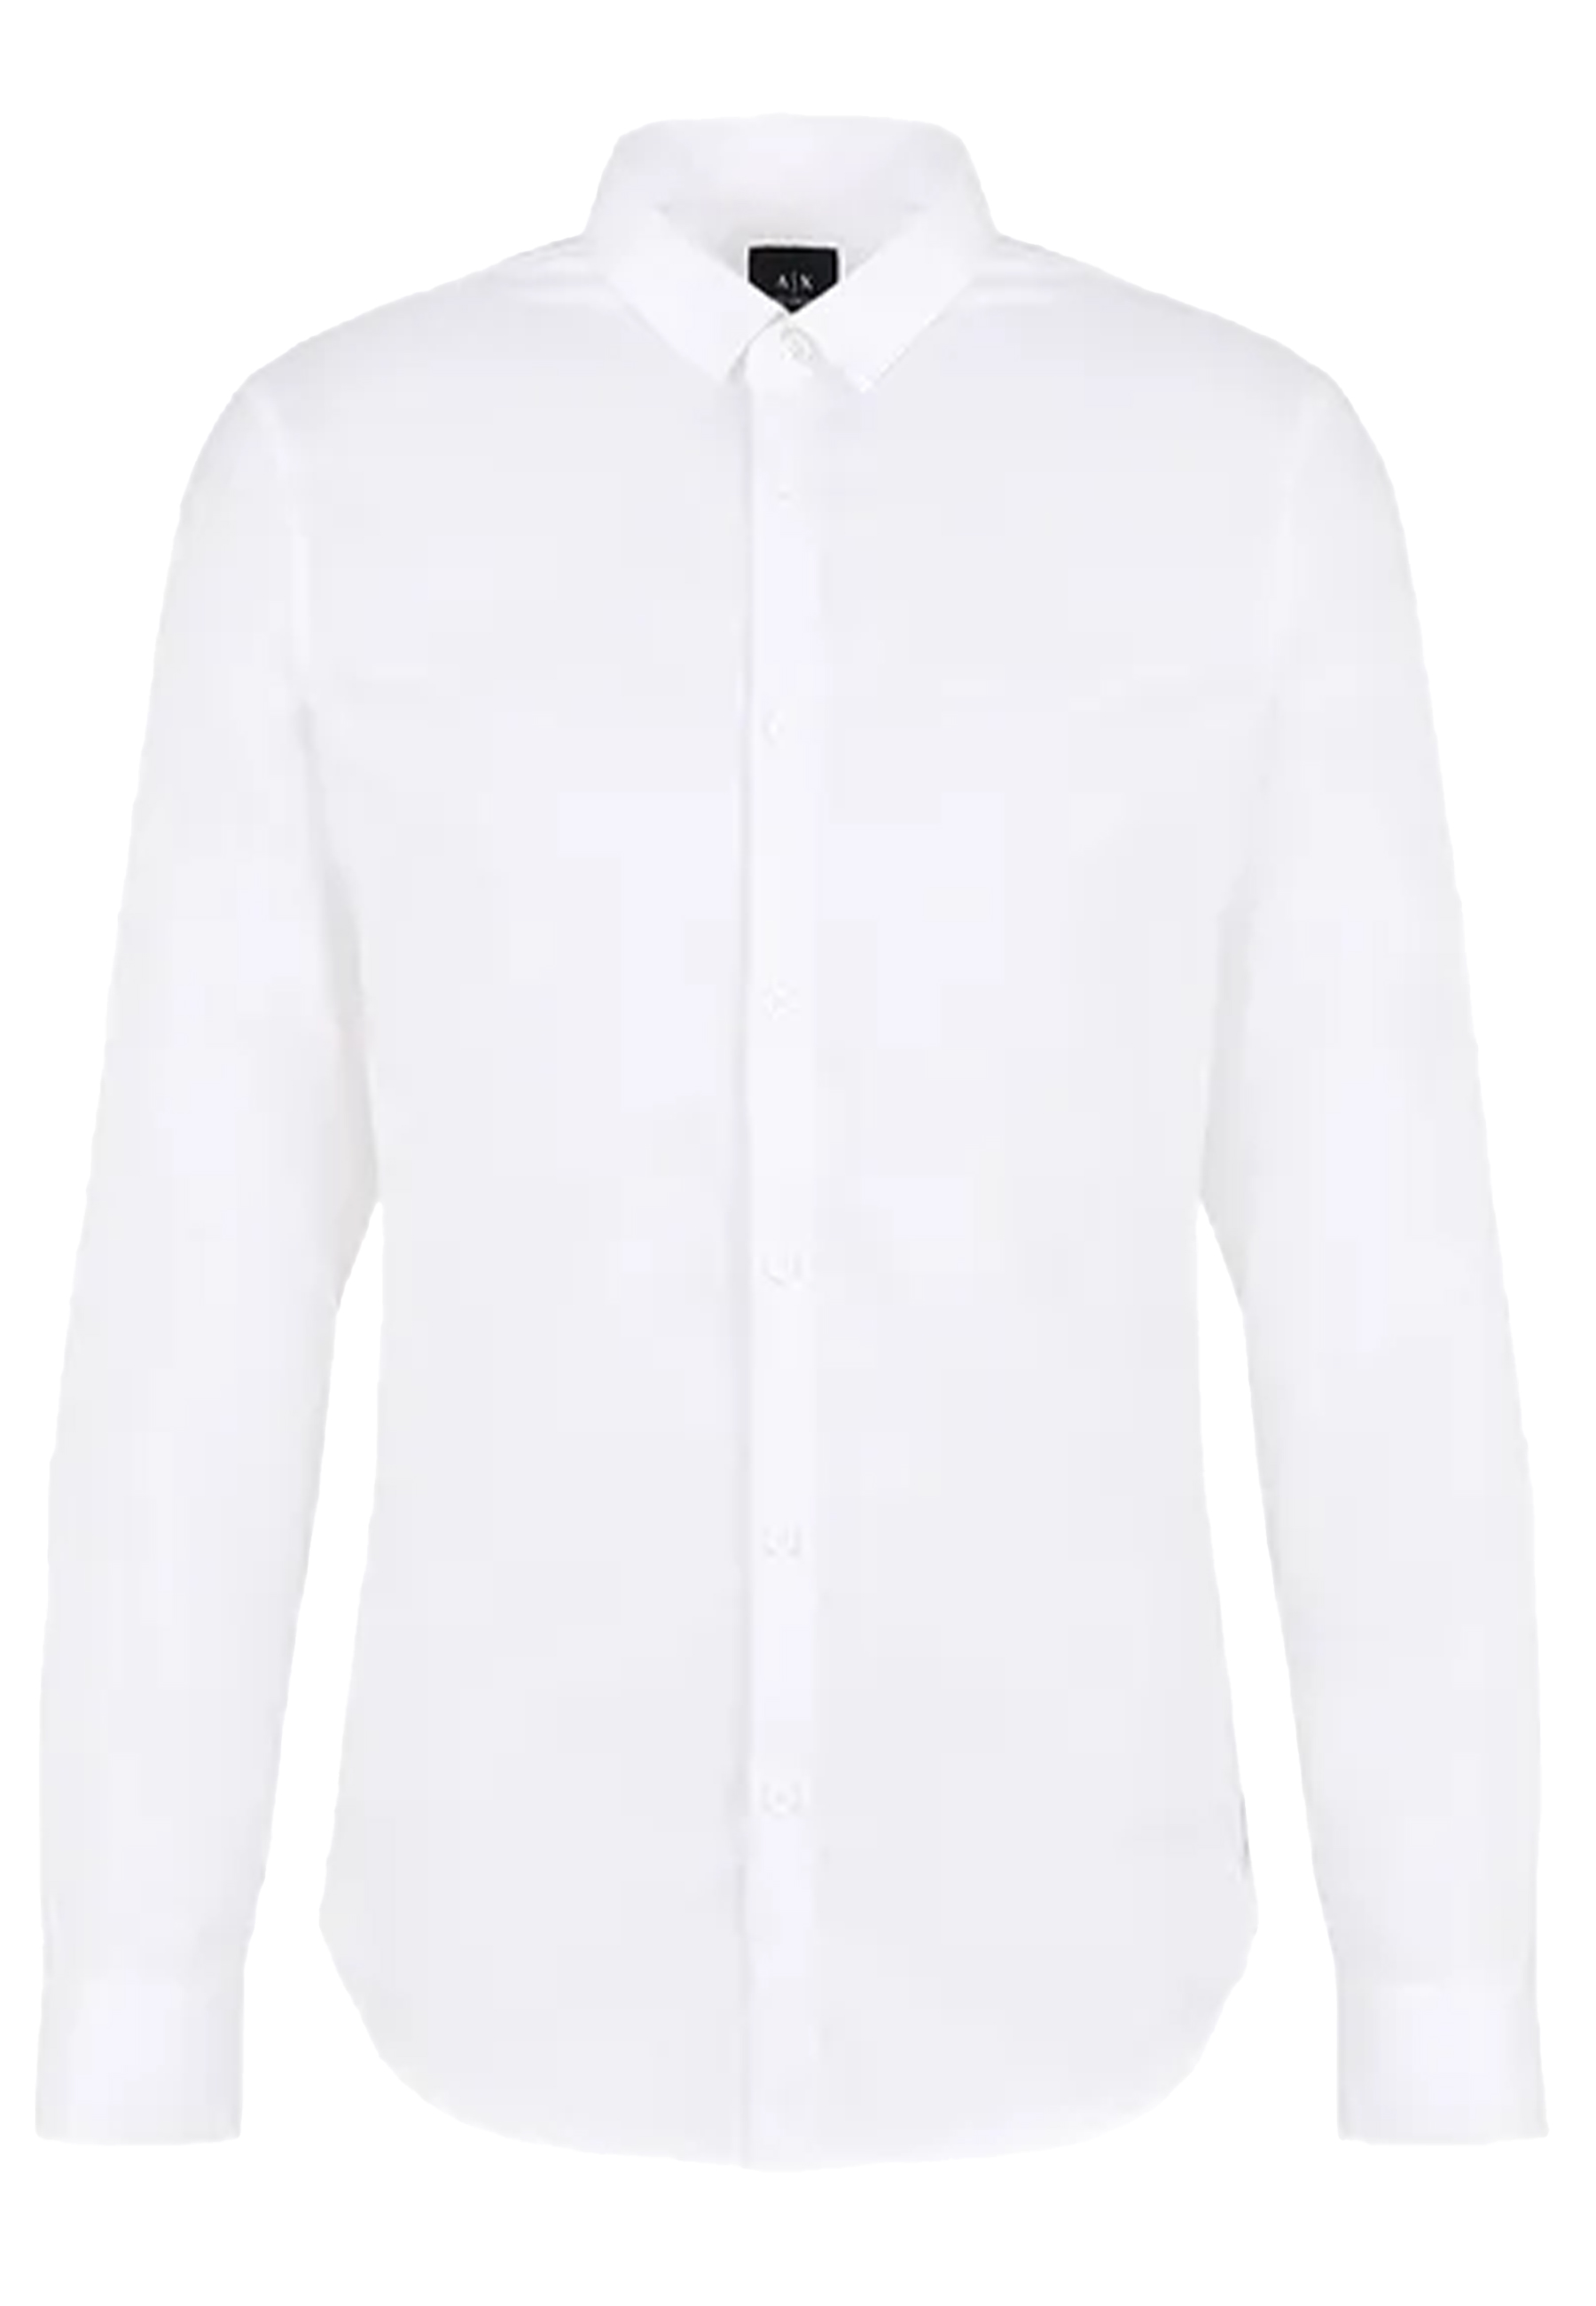 Emporio Armani lange mouw overhemden wit Heren maat S